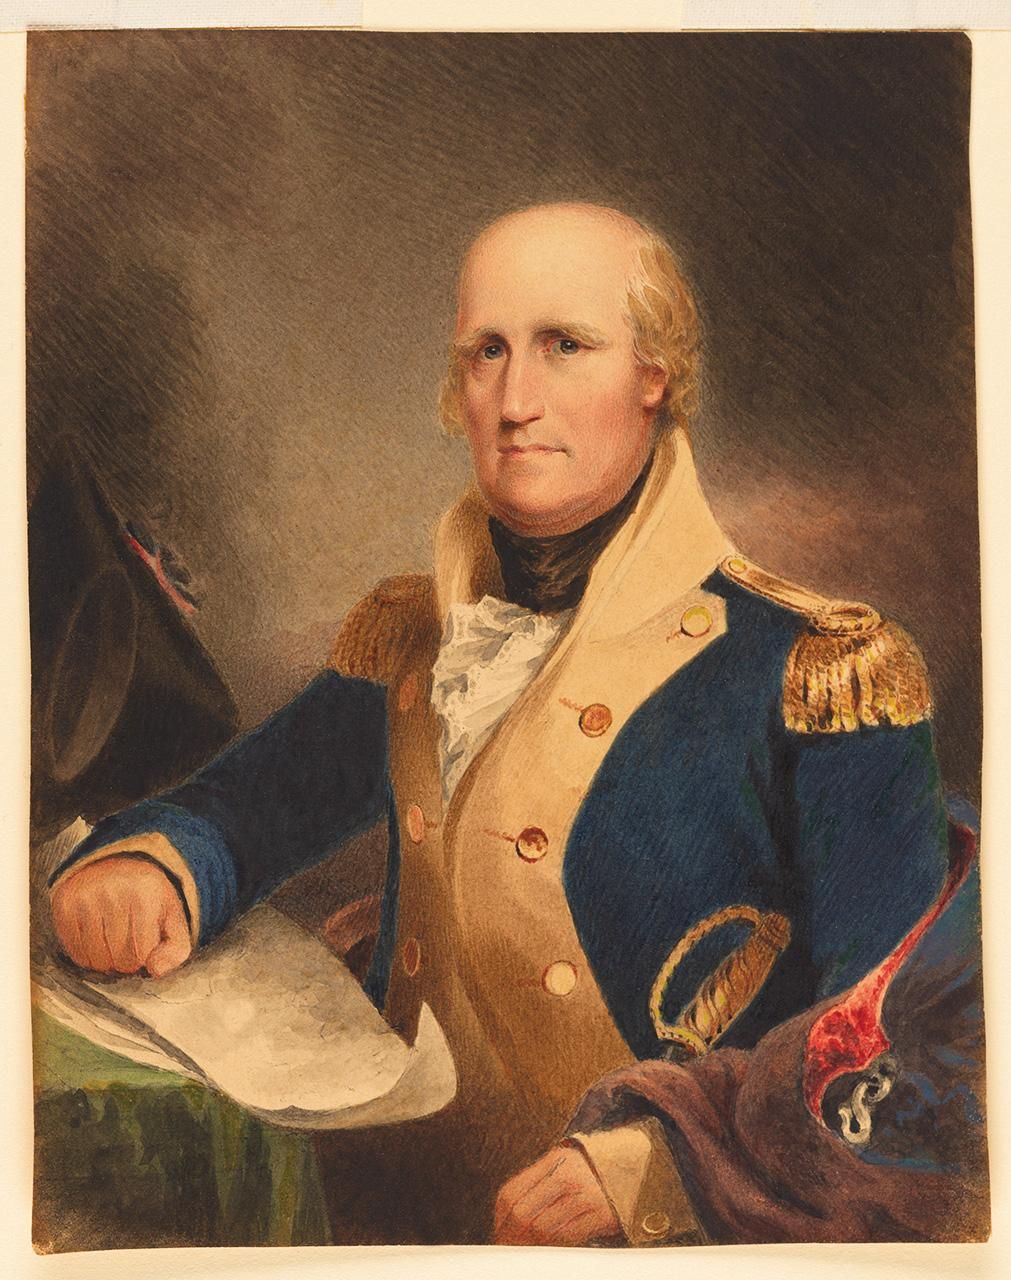 Gen. George Rogers Clark